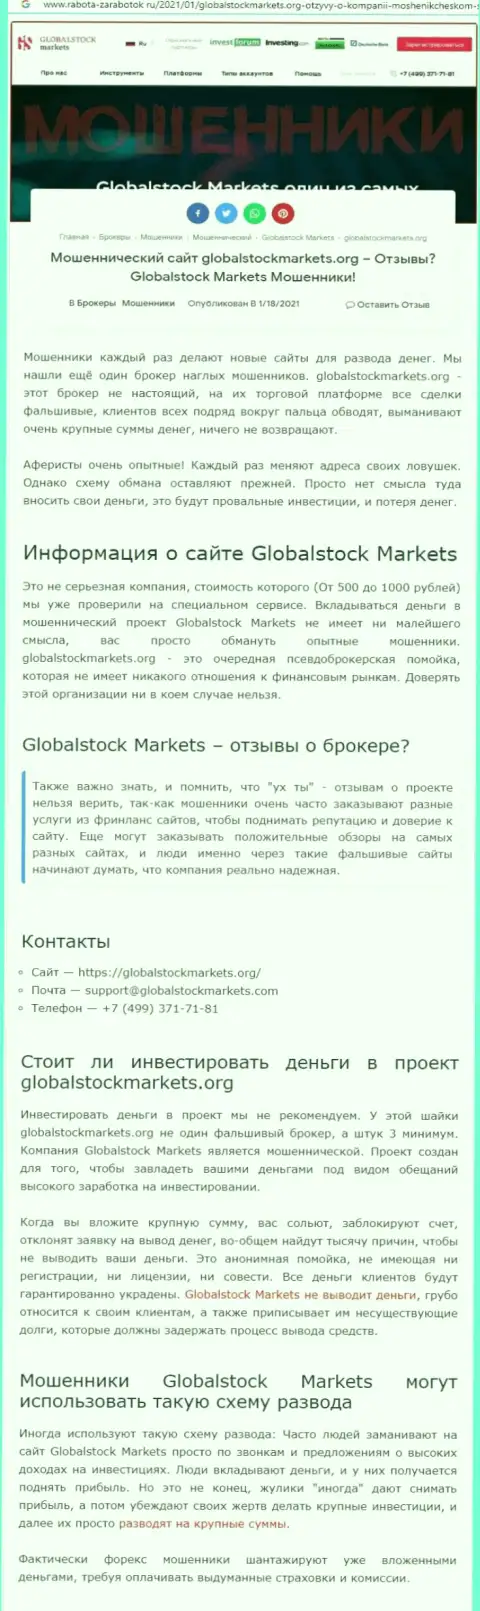 Global Stock Markets - это РАЗВОД НА СРЕДСТВА ! БУДЬТЕ КРАЙНЕ ВНИМАТЕЛЬНЫ (обзорная статья)